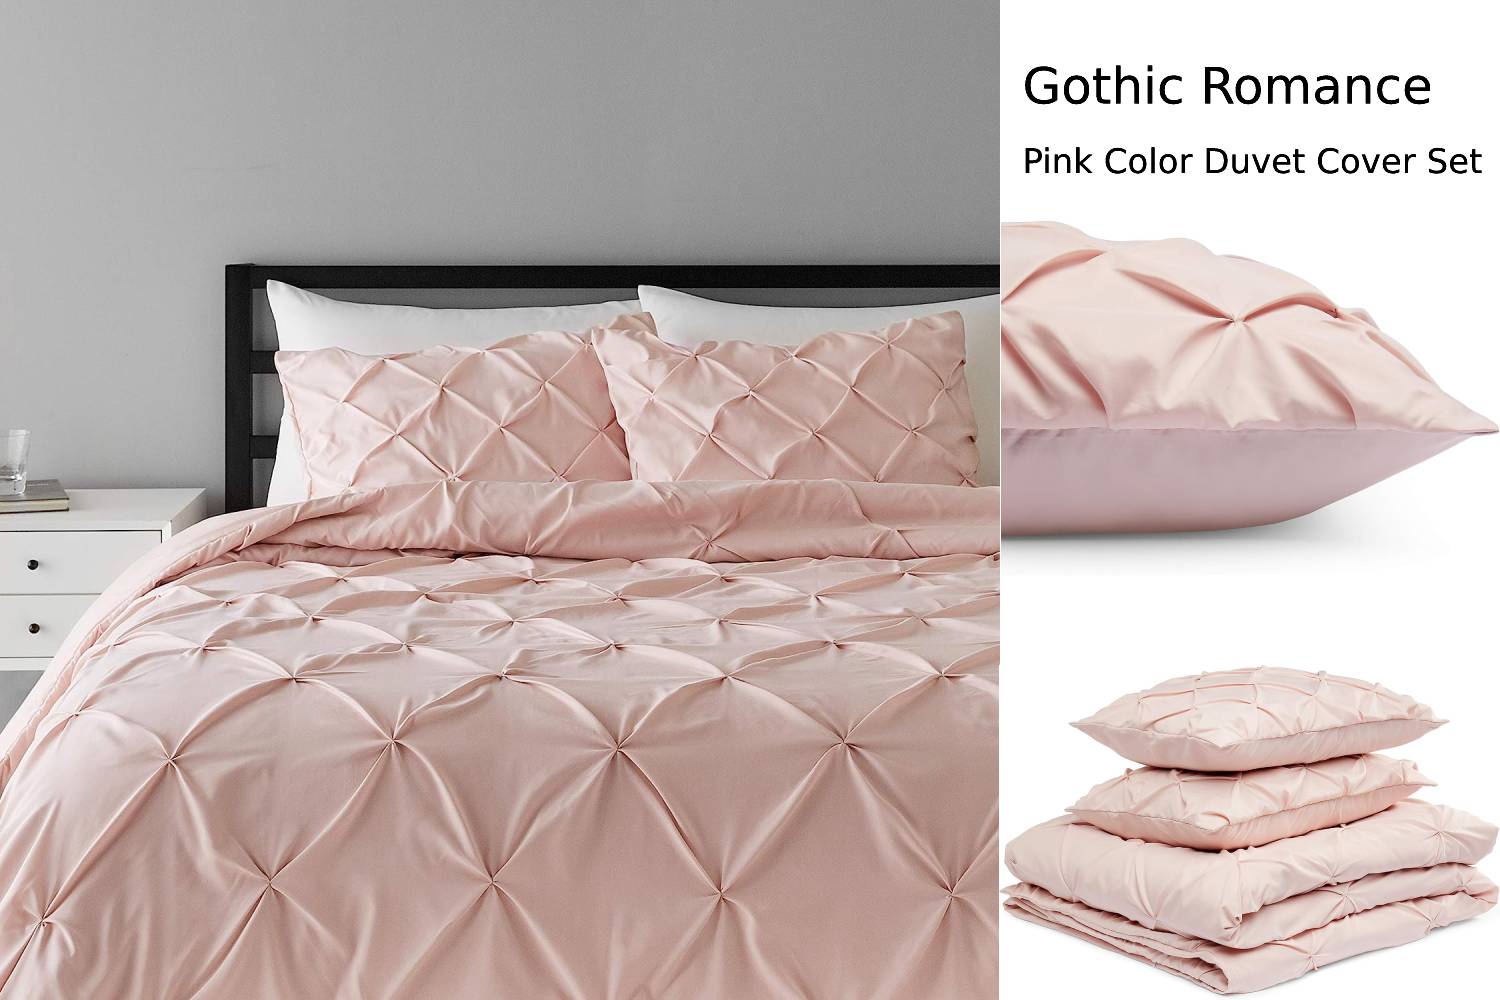 gothic romance pink color duvet cover set